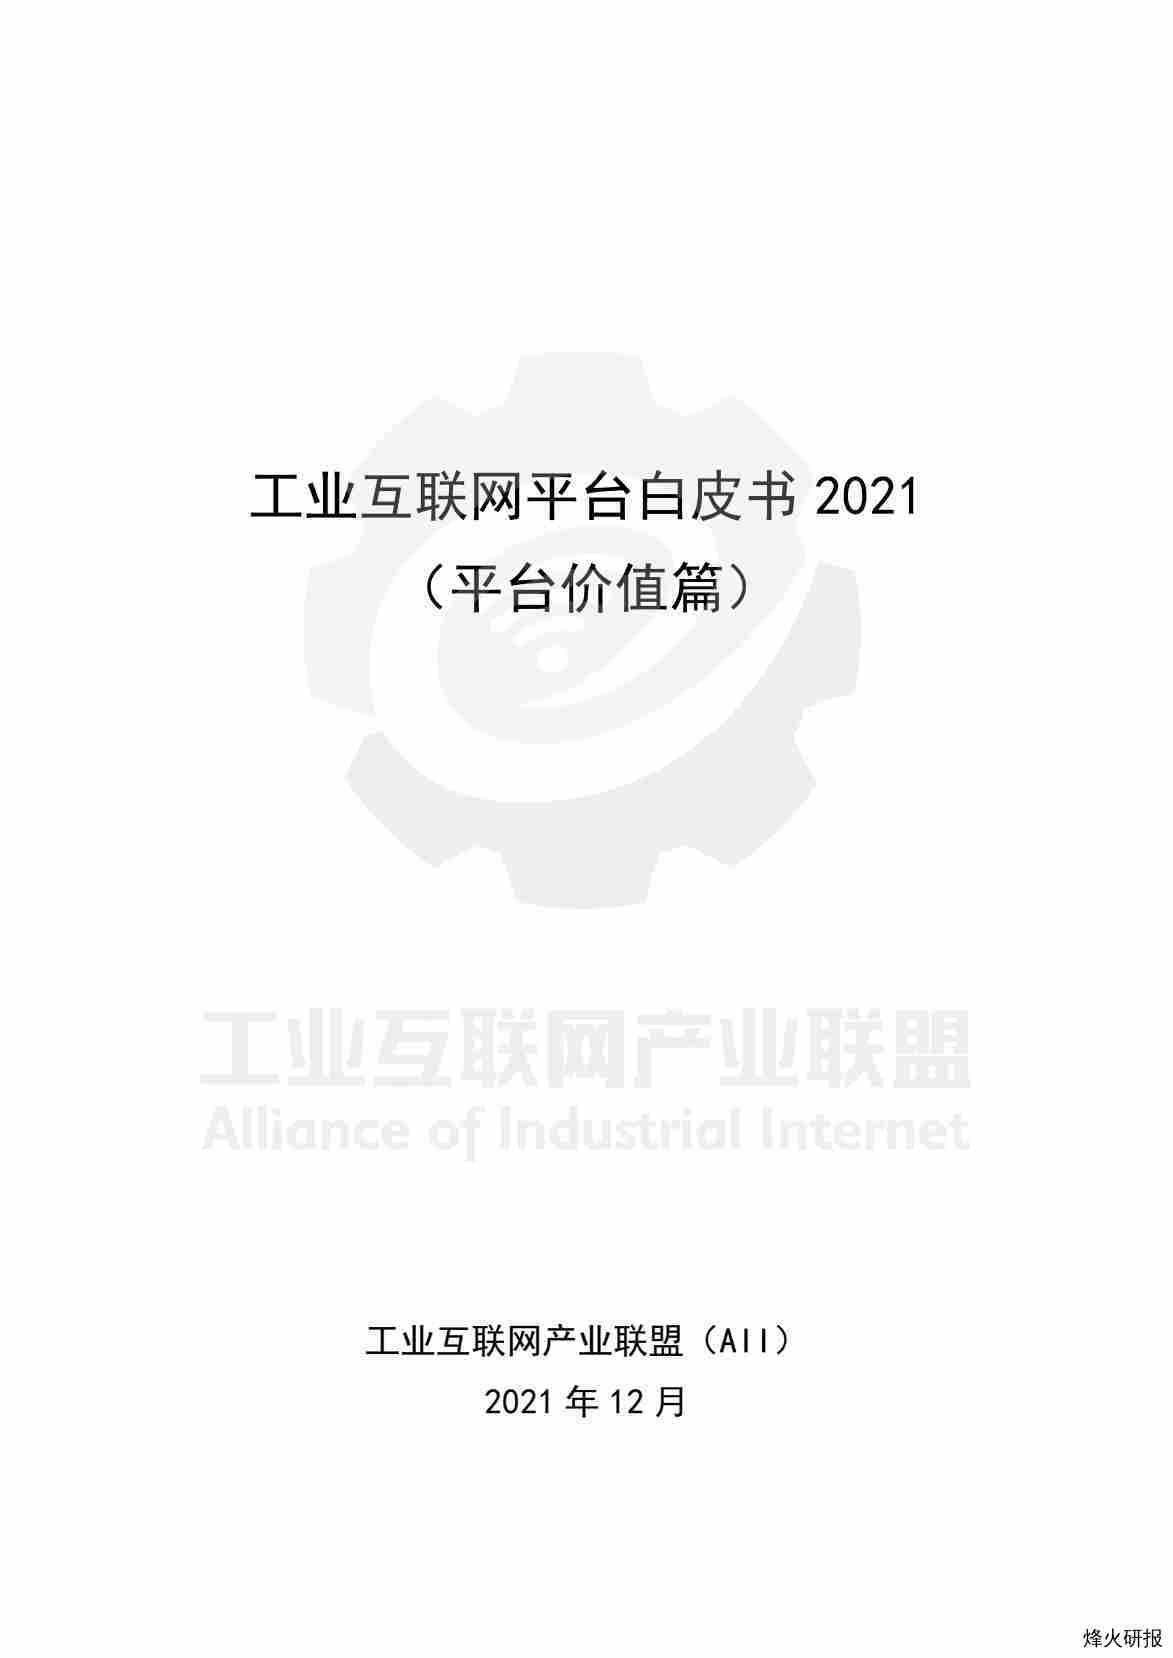 【工业互联网茶产业联盟】工业互联网平台白皮书2021（平台价值篇）.pdf-第一页